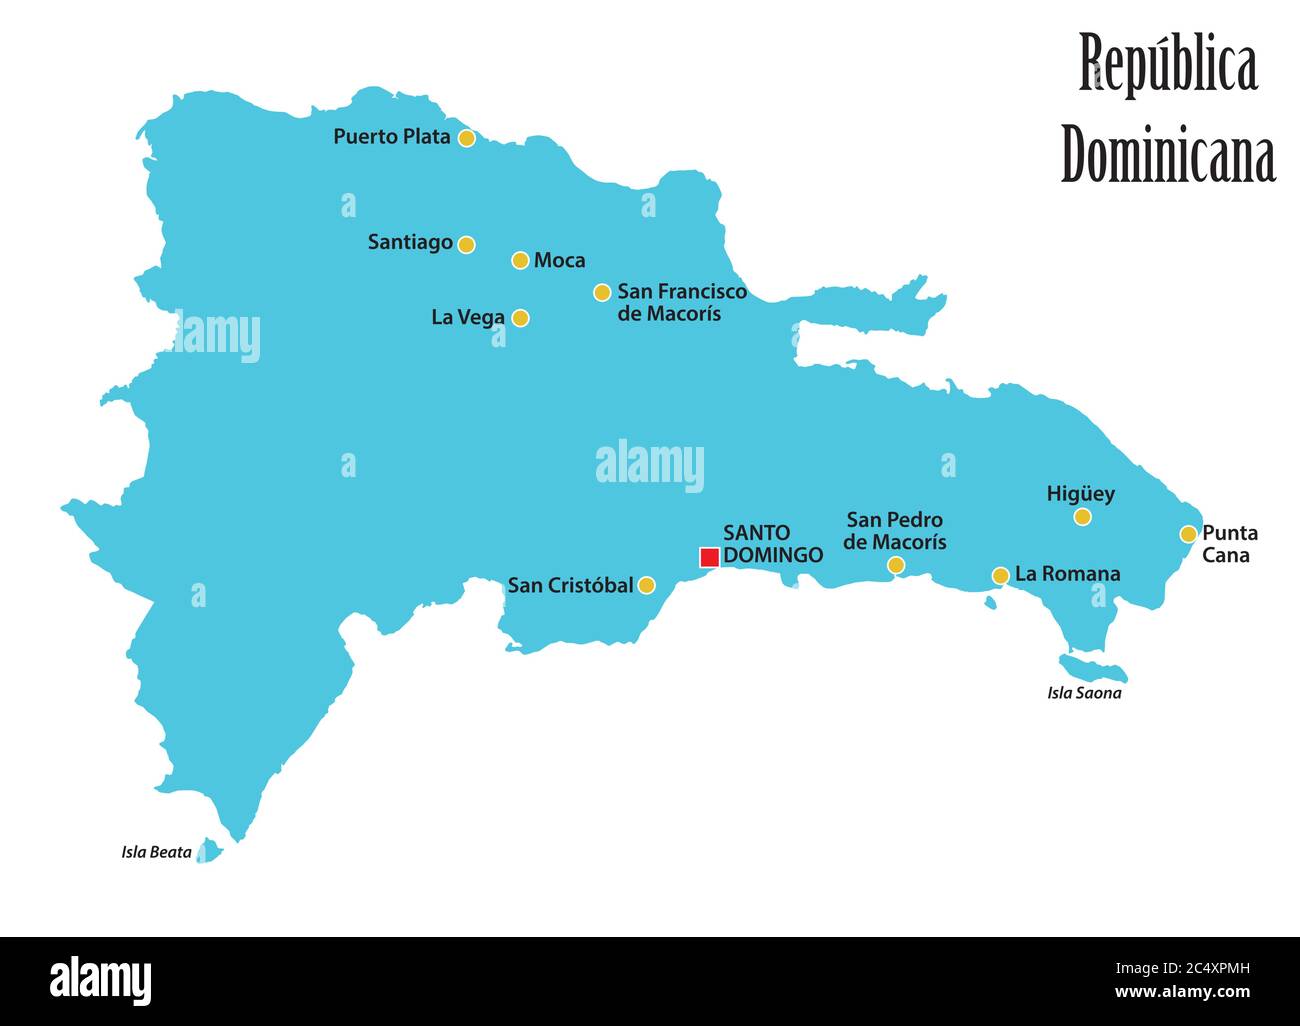 Mappa vettoriale della Repubblica Dominicana con le principali città Illustrazione Vettoriale